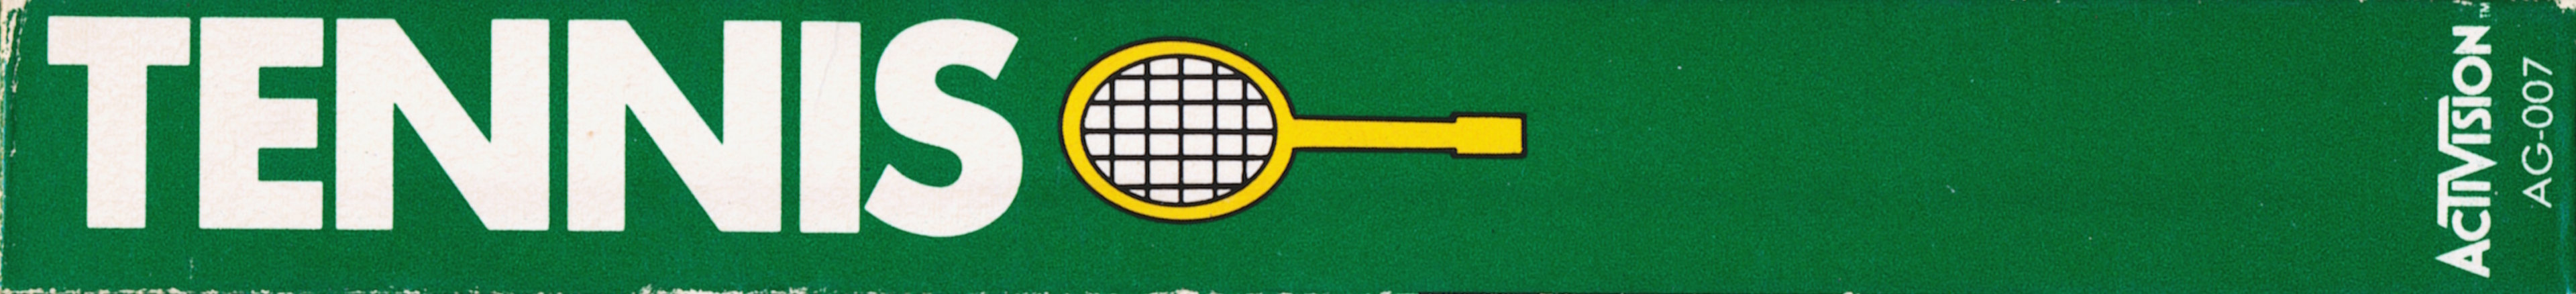 Tennis [Model AG-007]